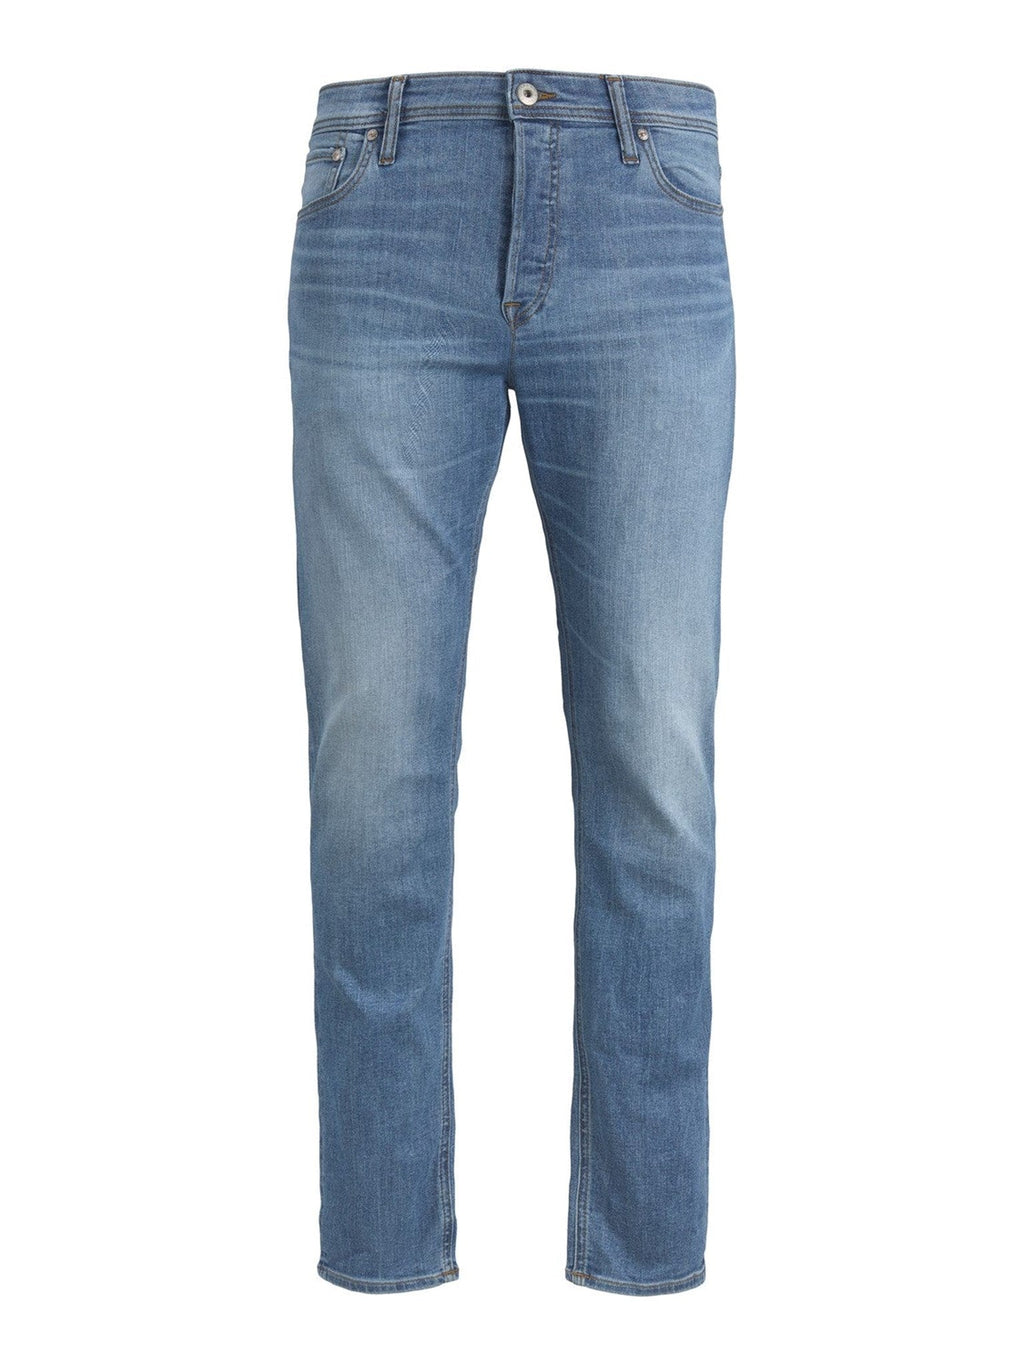 Jeans original Mike - Denim bleu clair